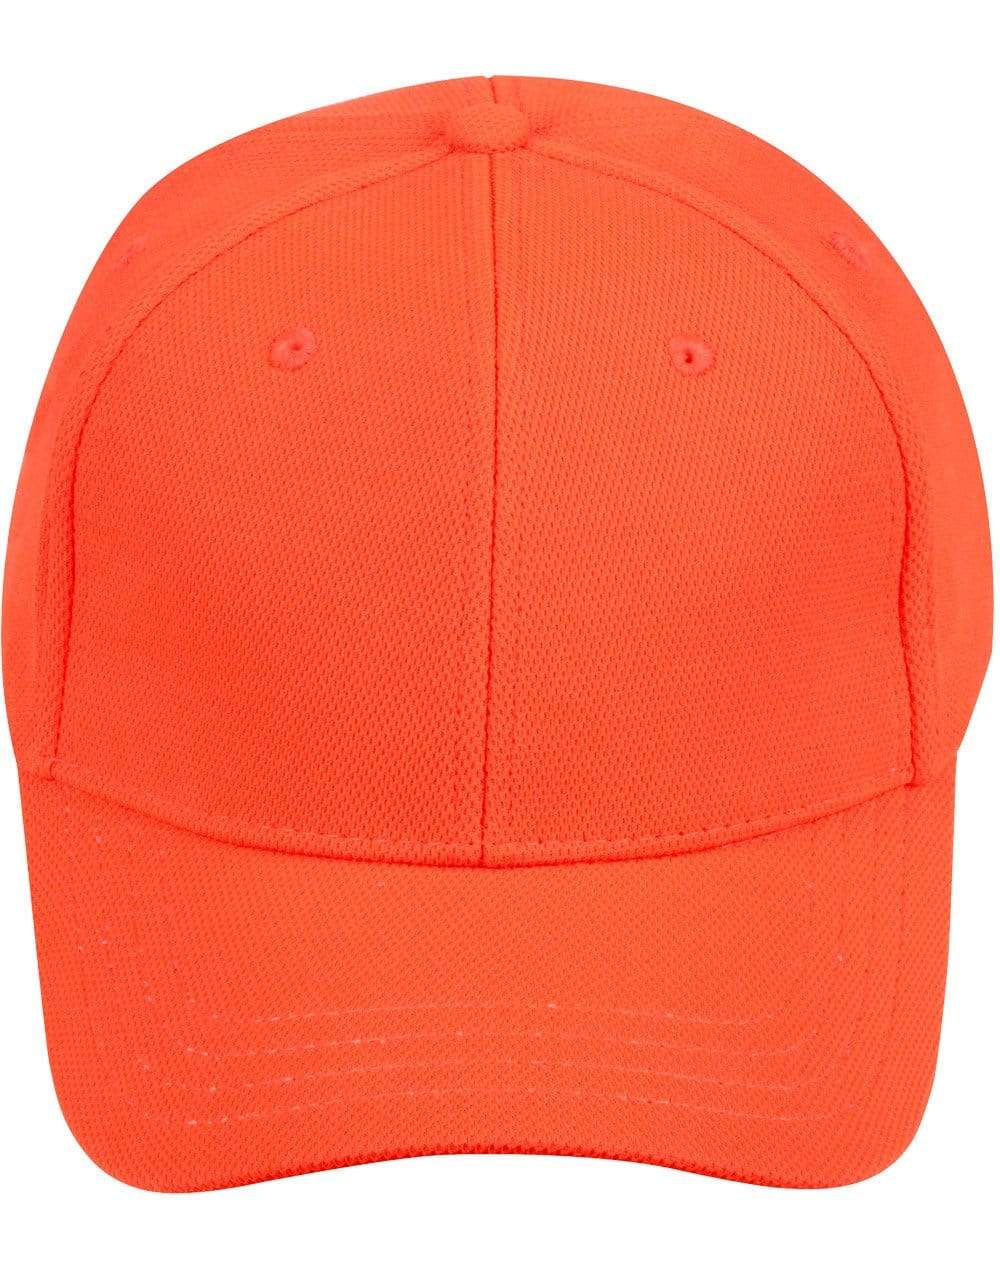 Pique Mesh Cap CH77 Active Wear Australian Industrial Wear Fluoro Orange One size 